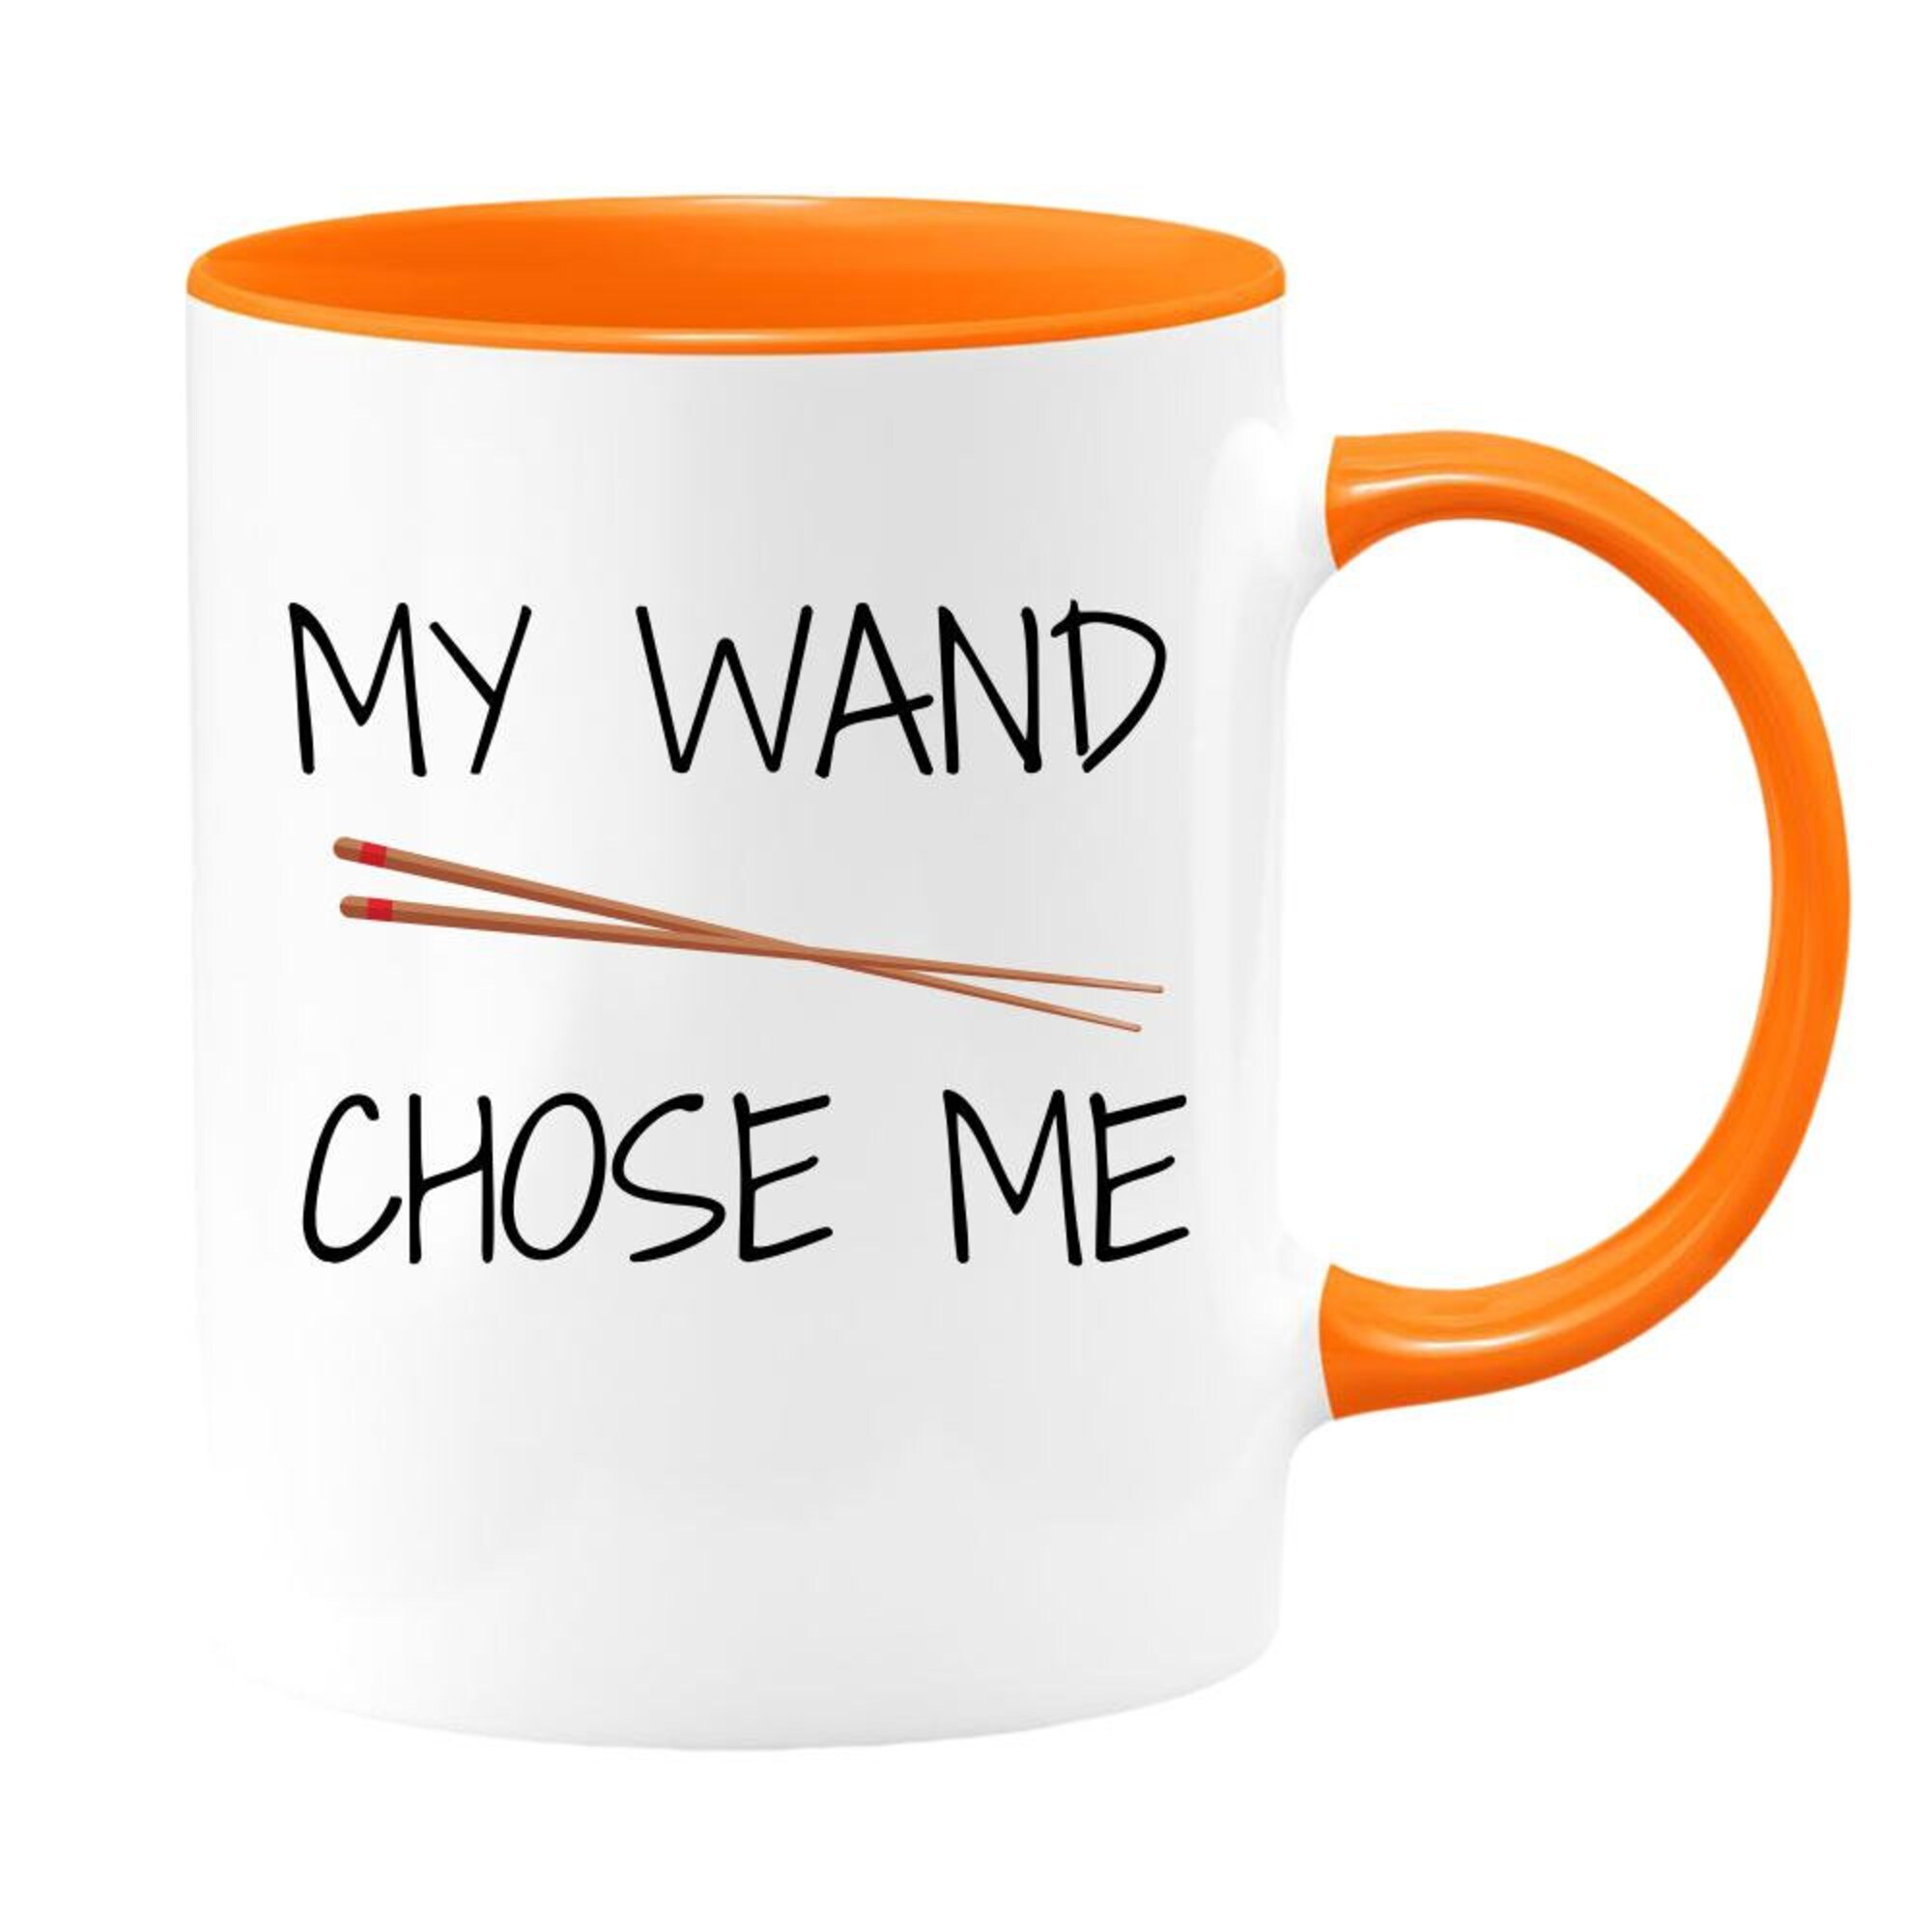 My Wand (Chopsticks) Chose Me Coffee Tea Mug, Chopsticks Mu